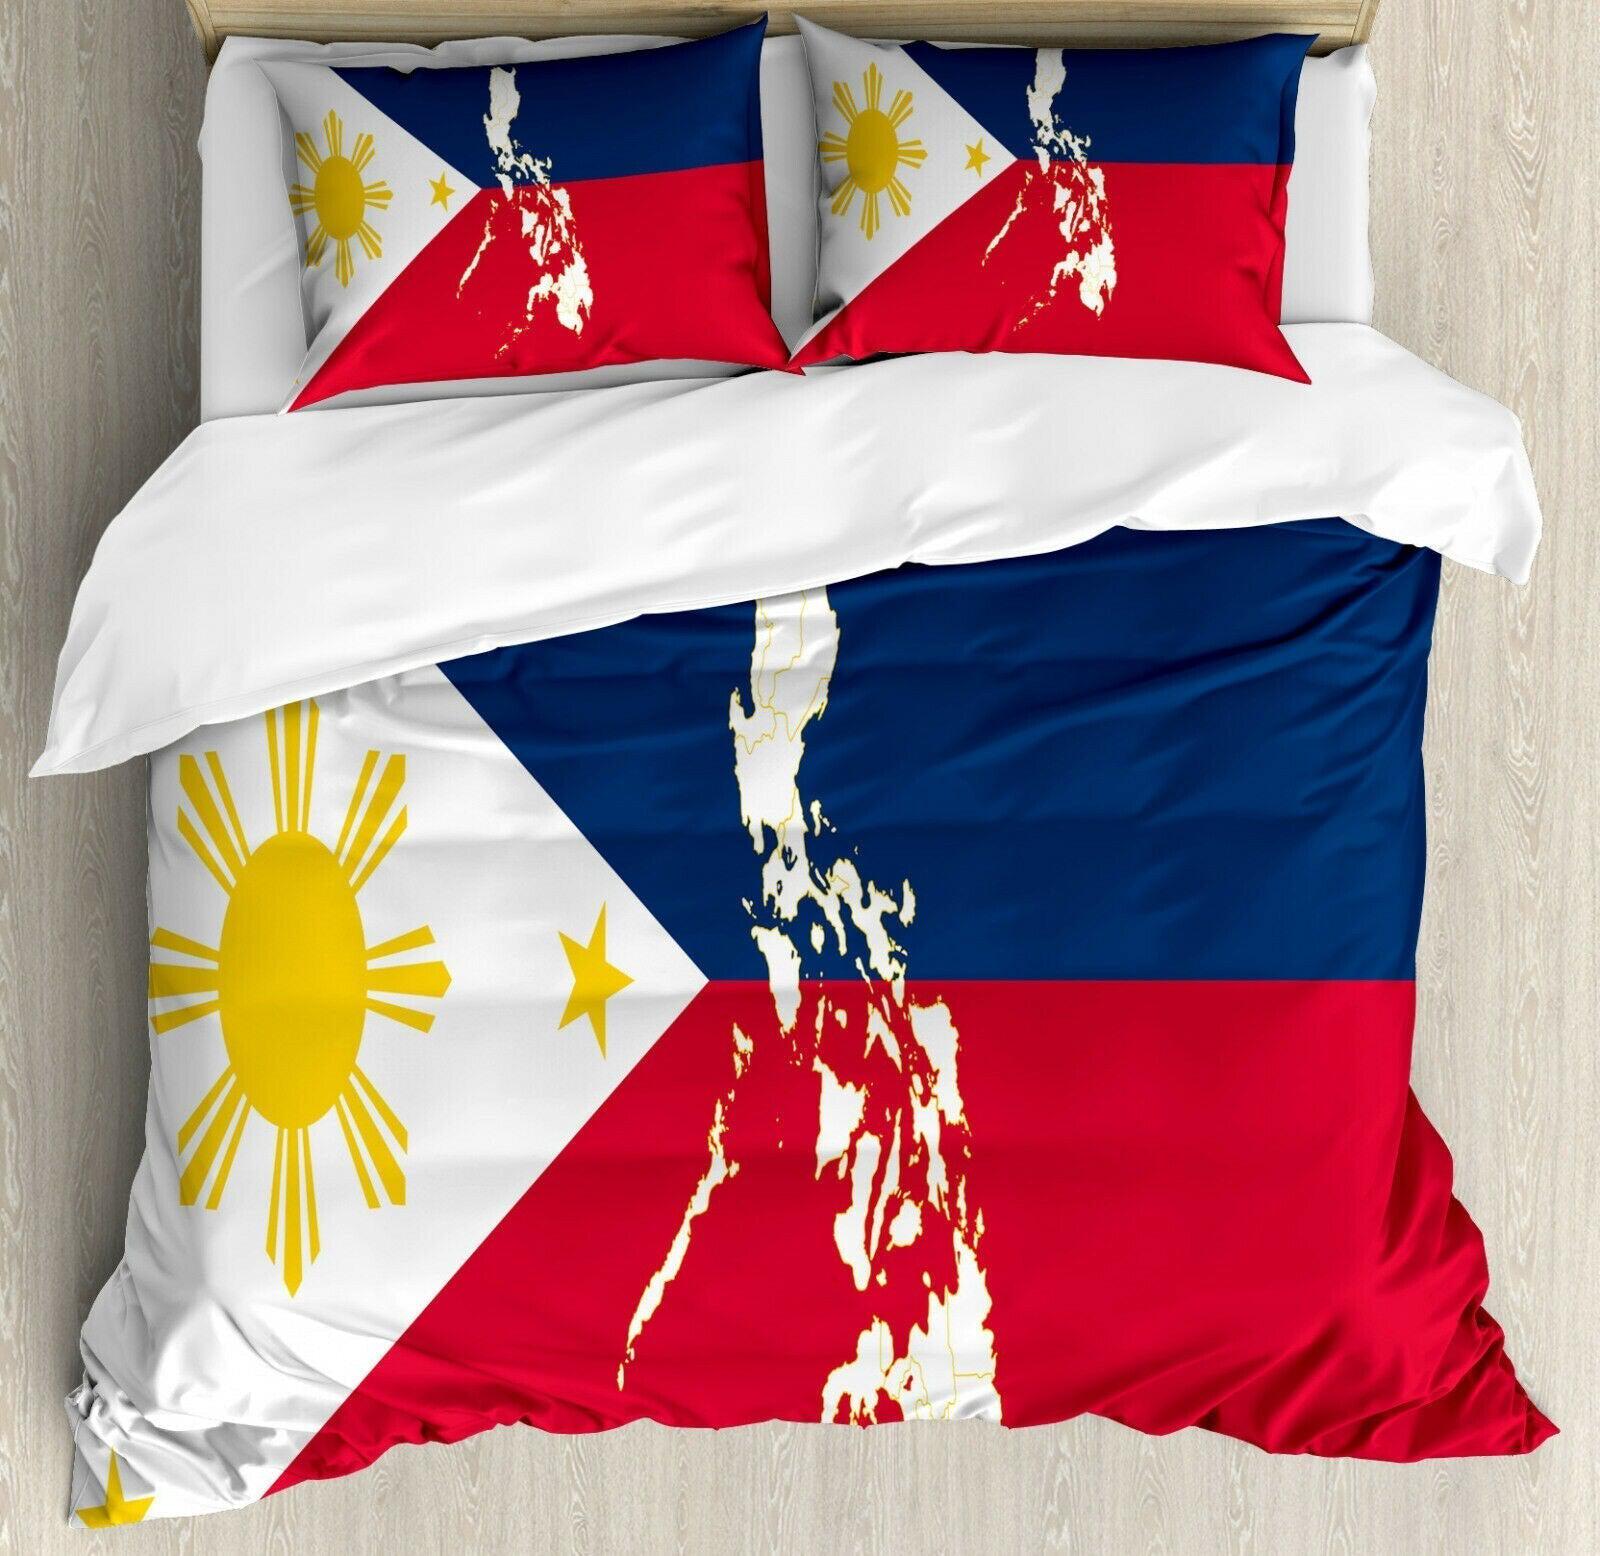 Philippine flag duvet cover